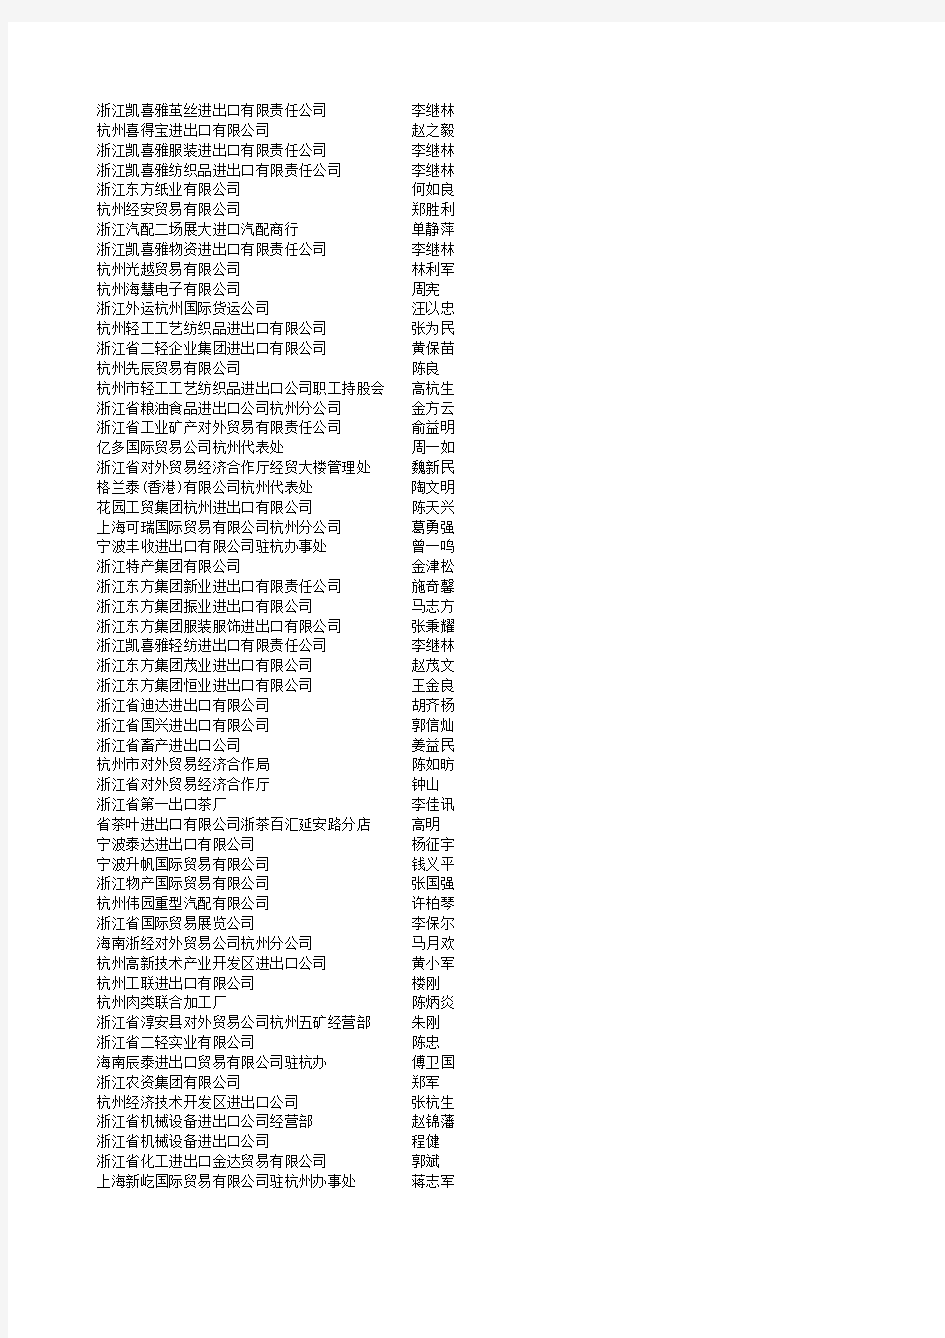 2009年浙江外贸进出口企业名单